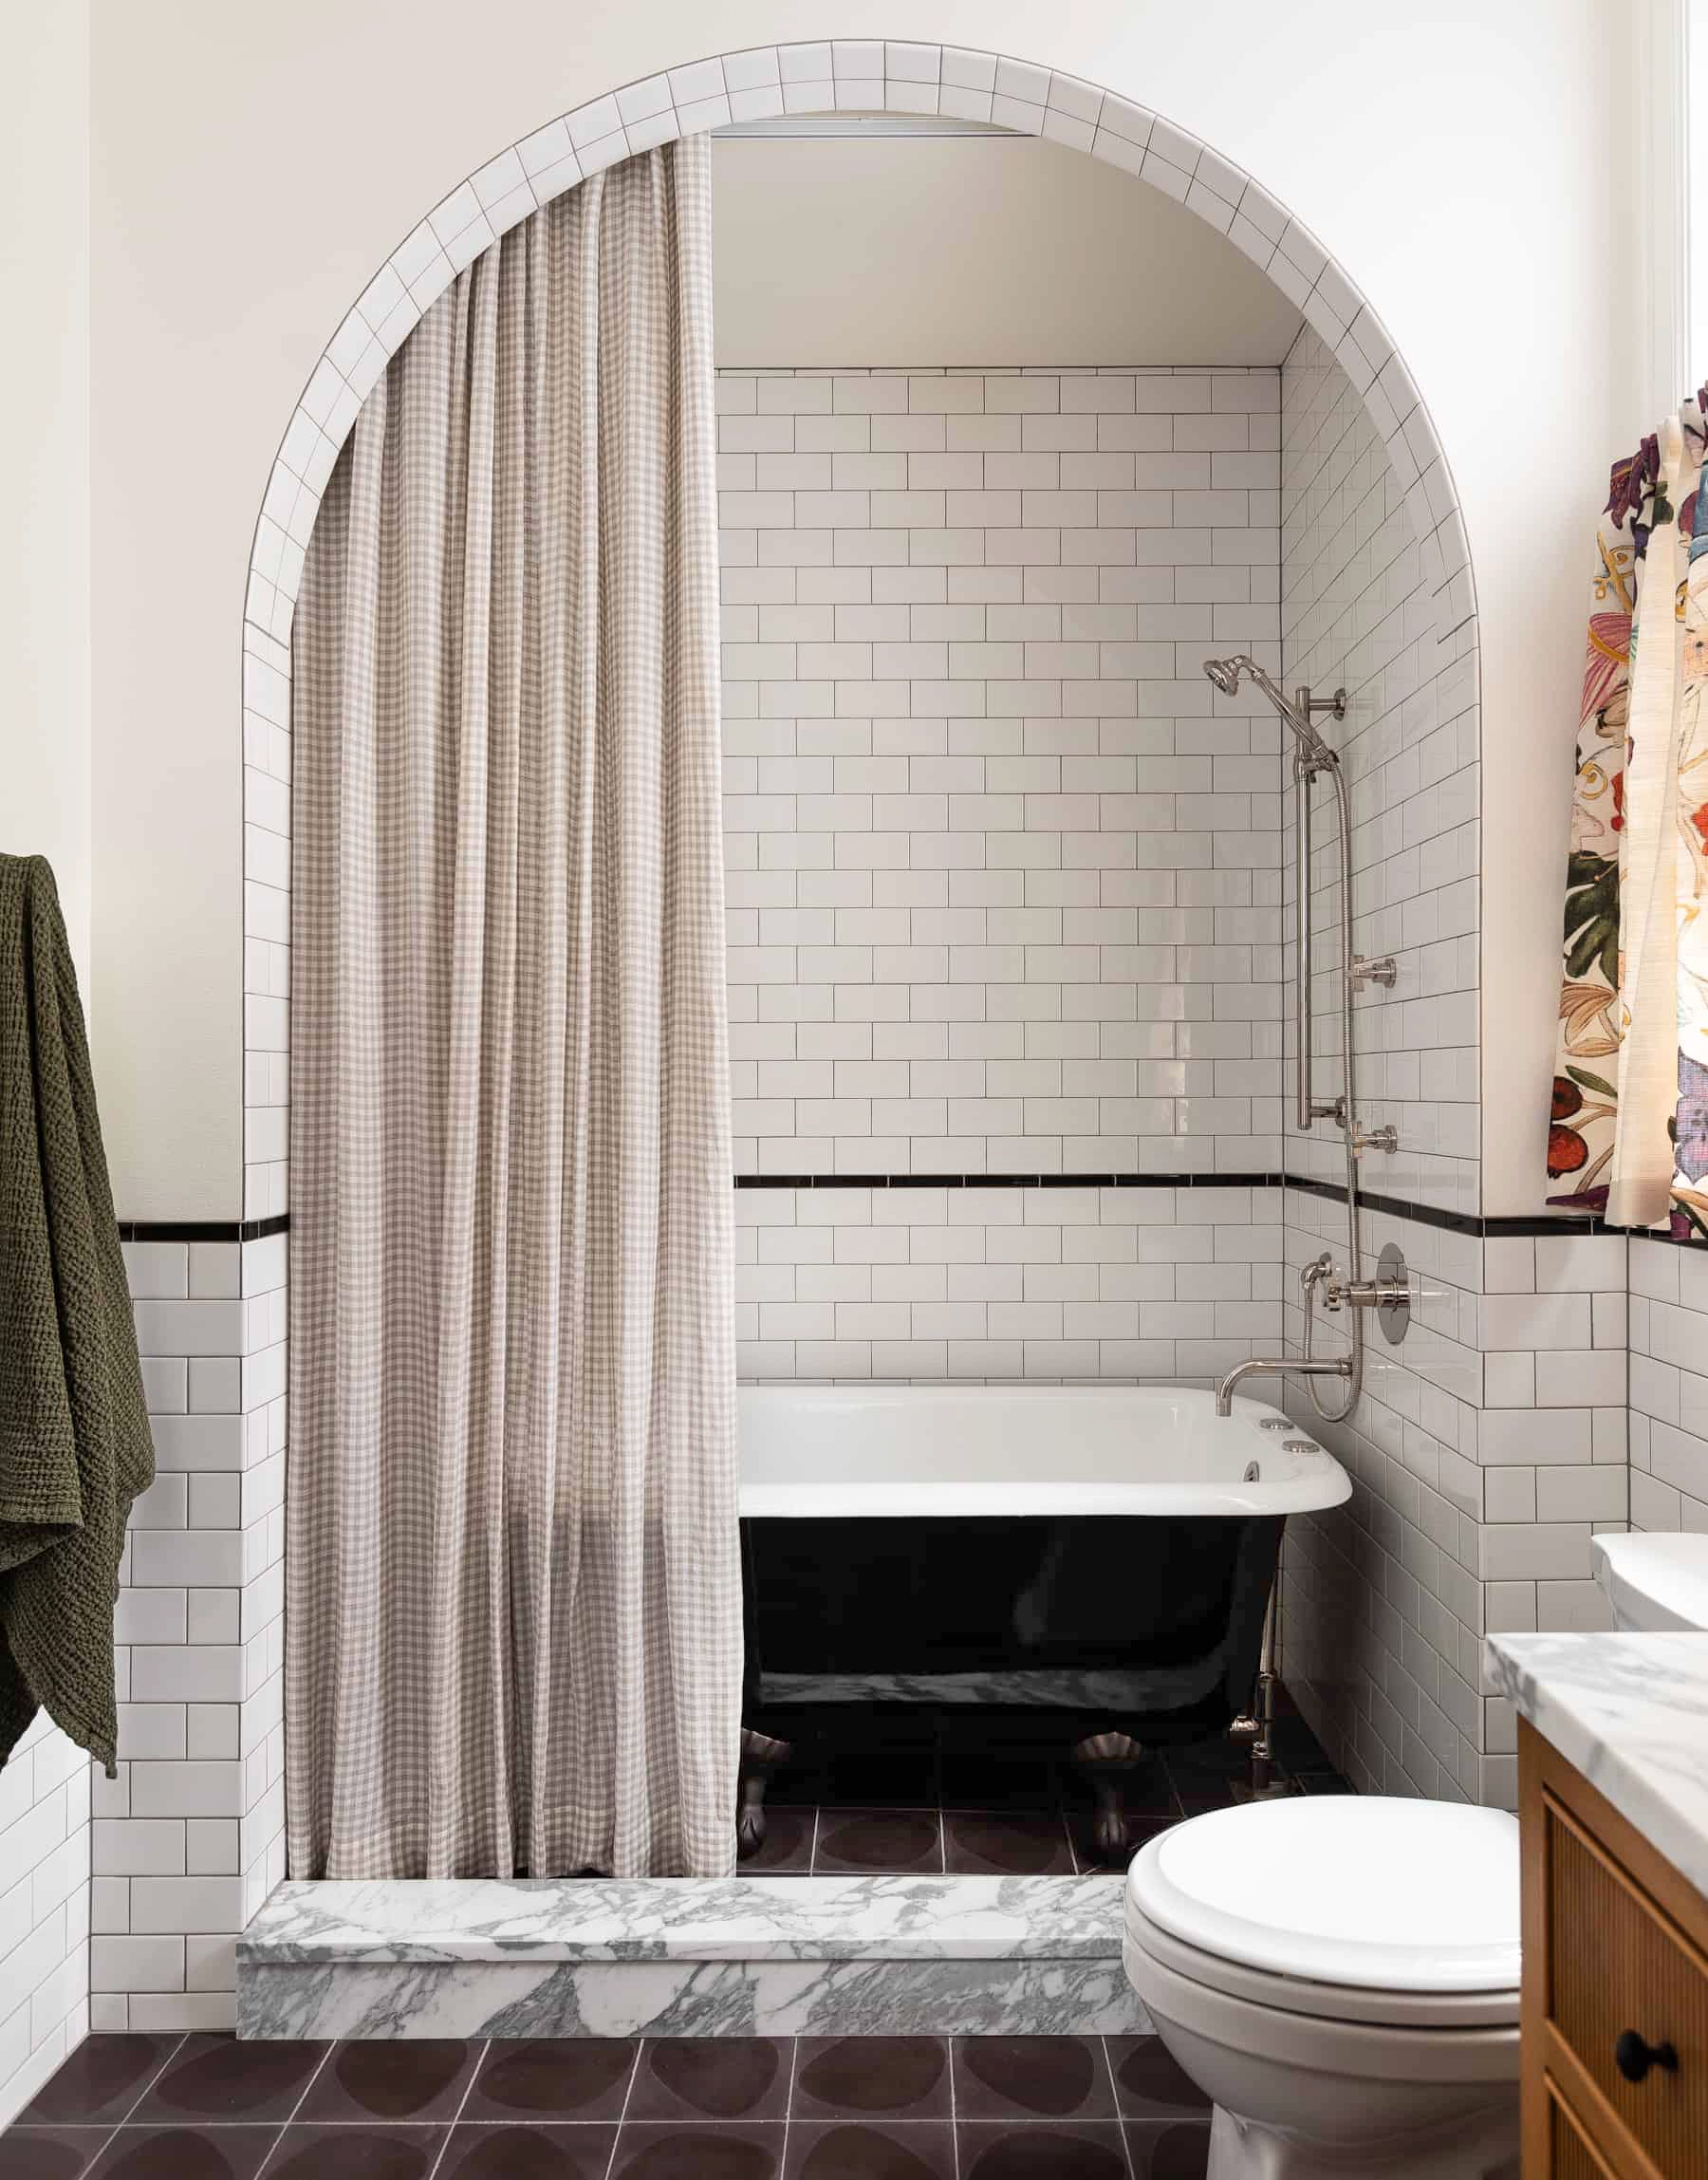 55 Bathroom Tile Ideas Bath, Black And White Penny Tile Bathroom Floor Plan